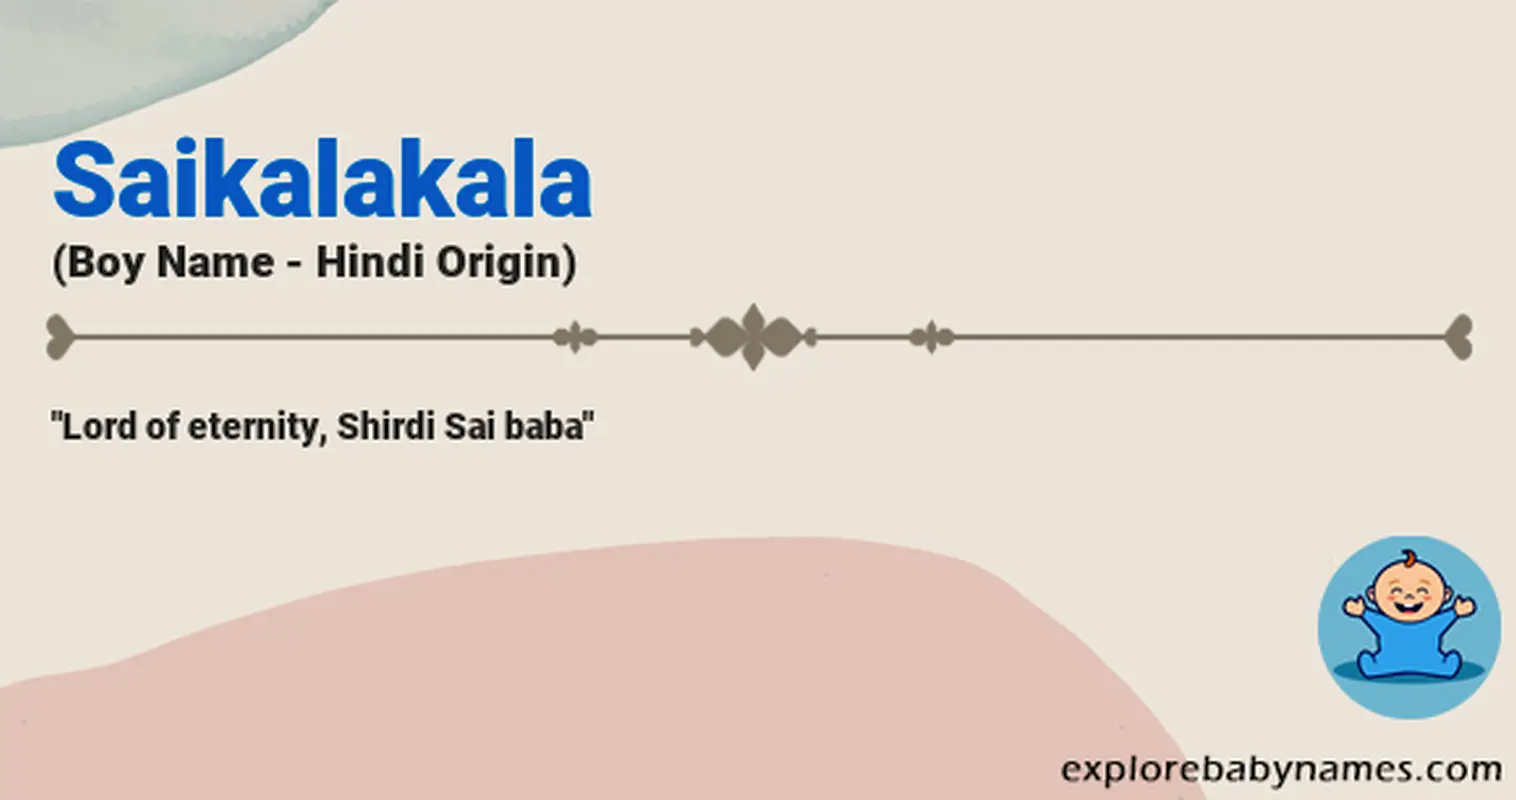 Meaning of Saikalakala